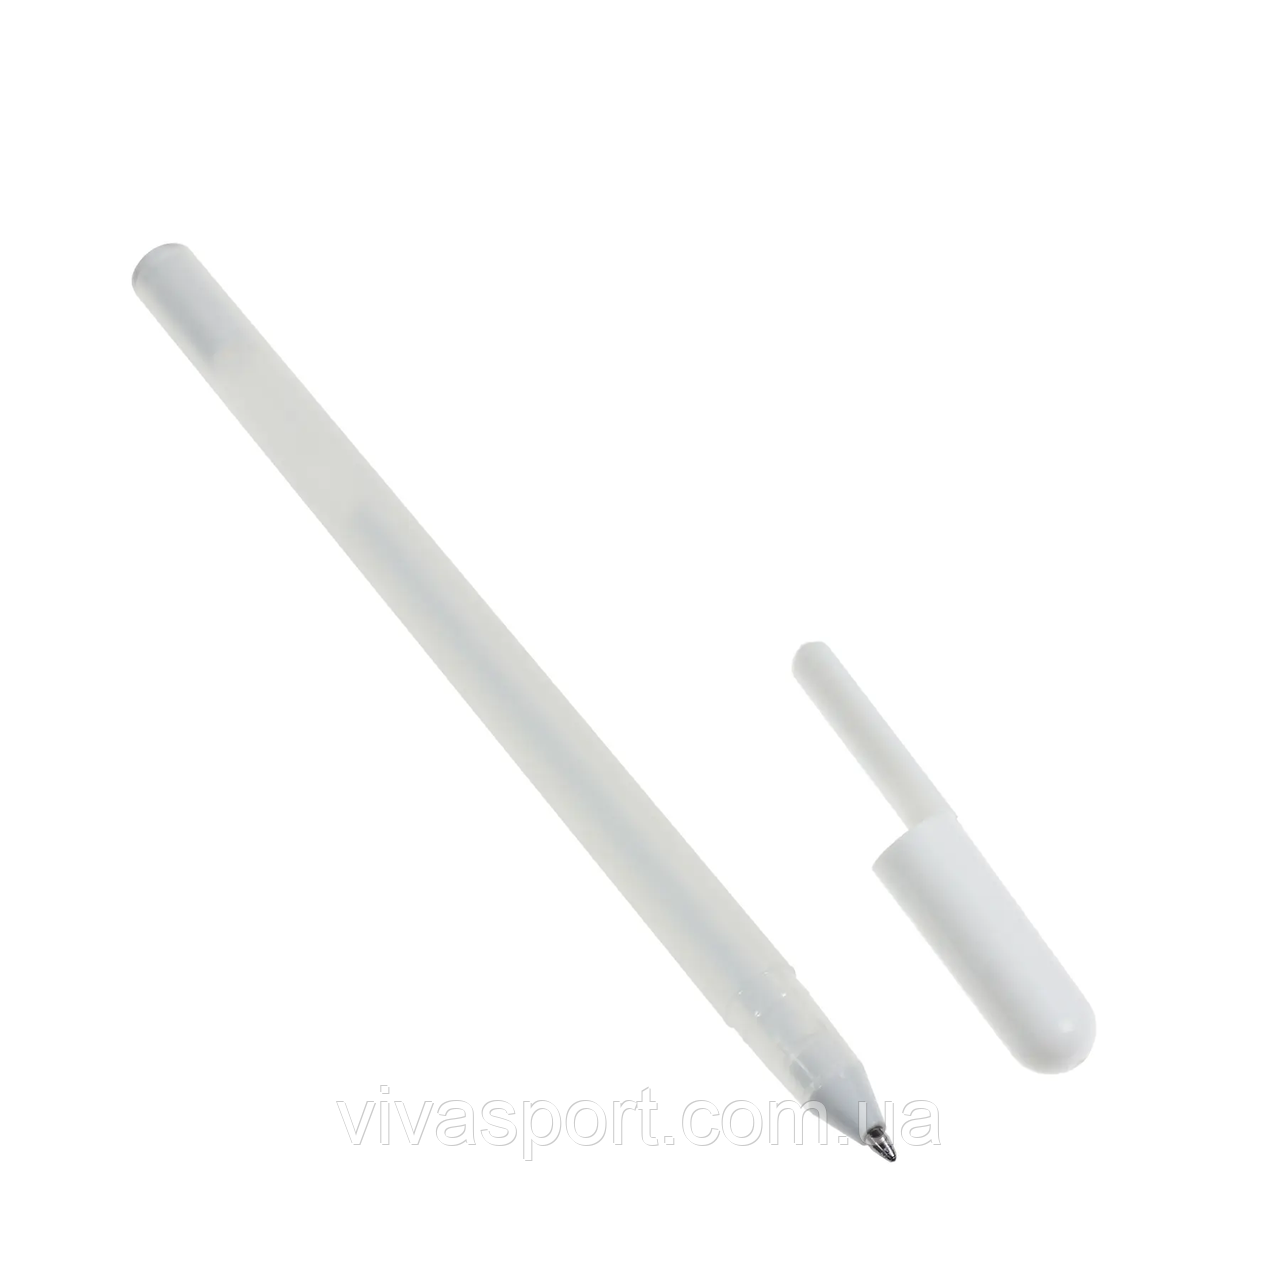 Ручка гелева 0,8 мм, біла